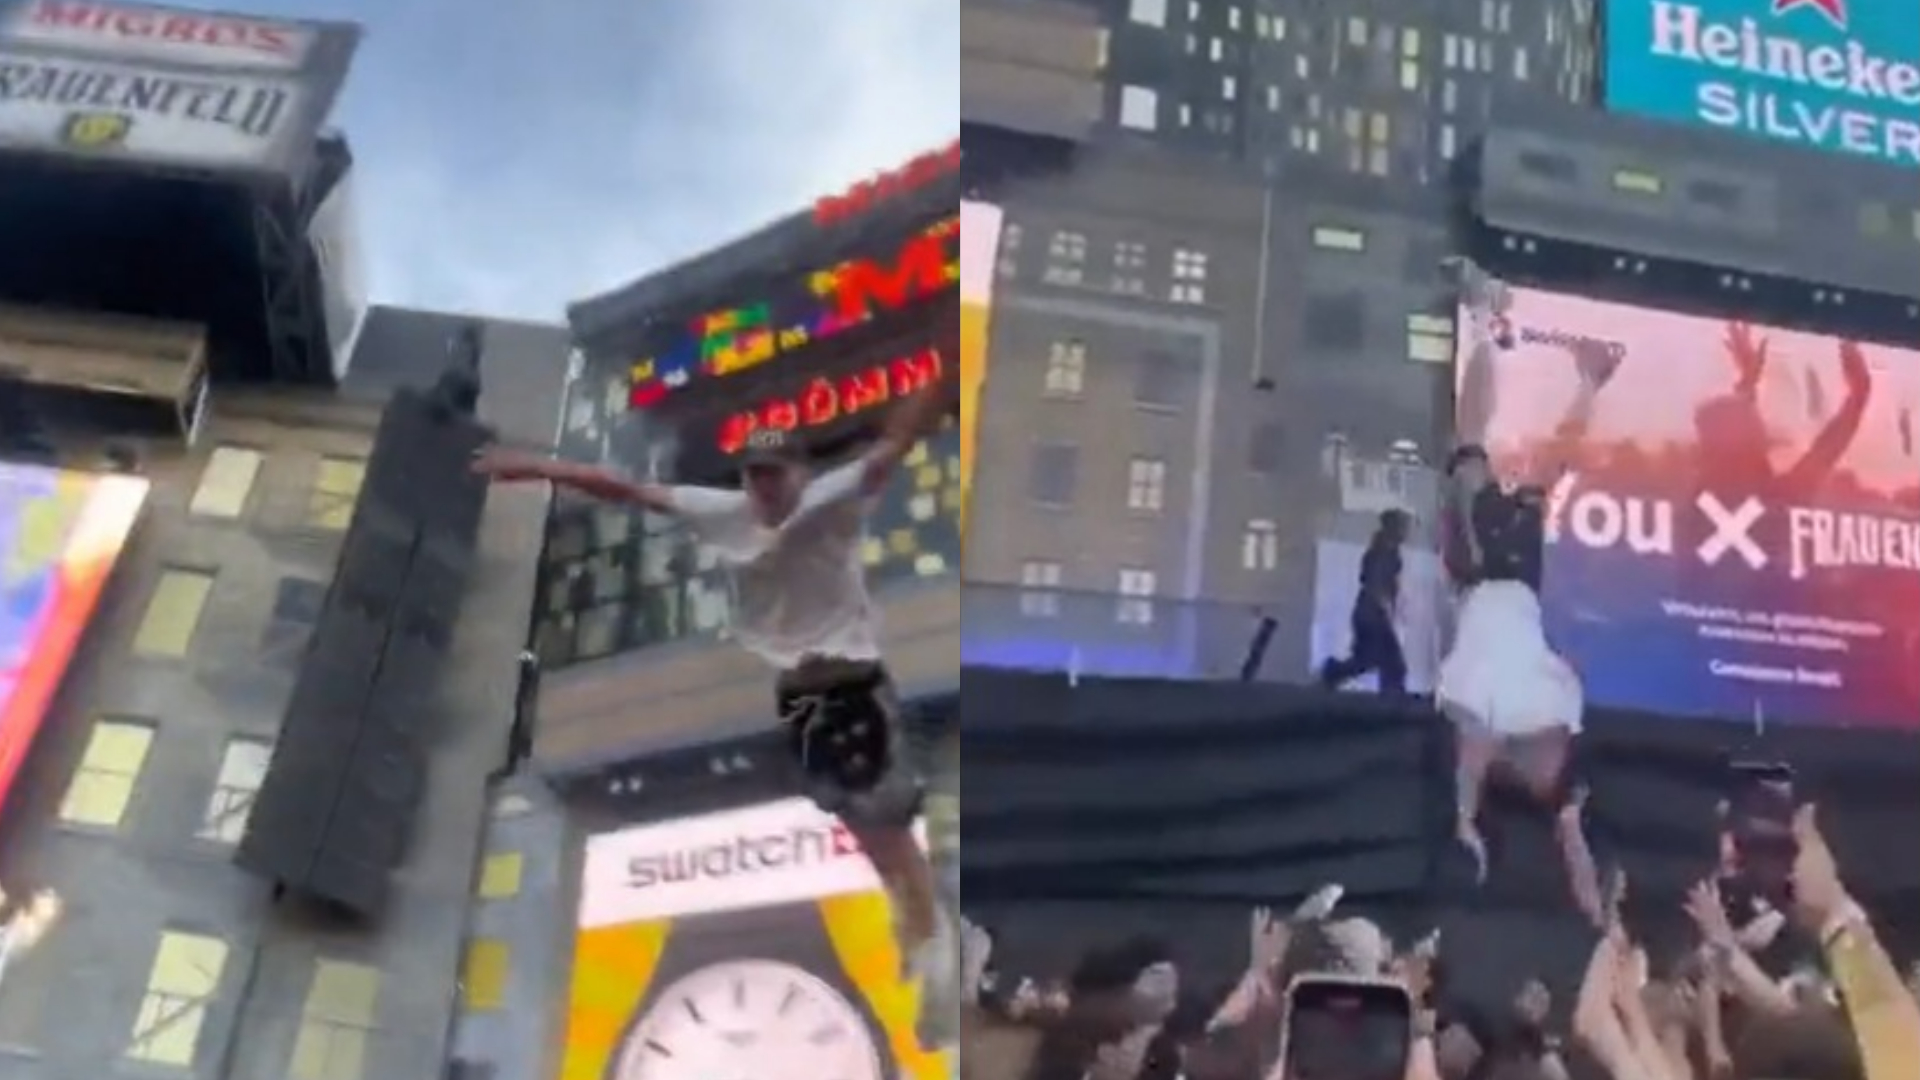 Fã de rapper salta do palco para “surfar” na plateia, cai no chão e vídeo viraliza; assista